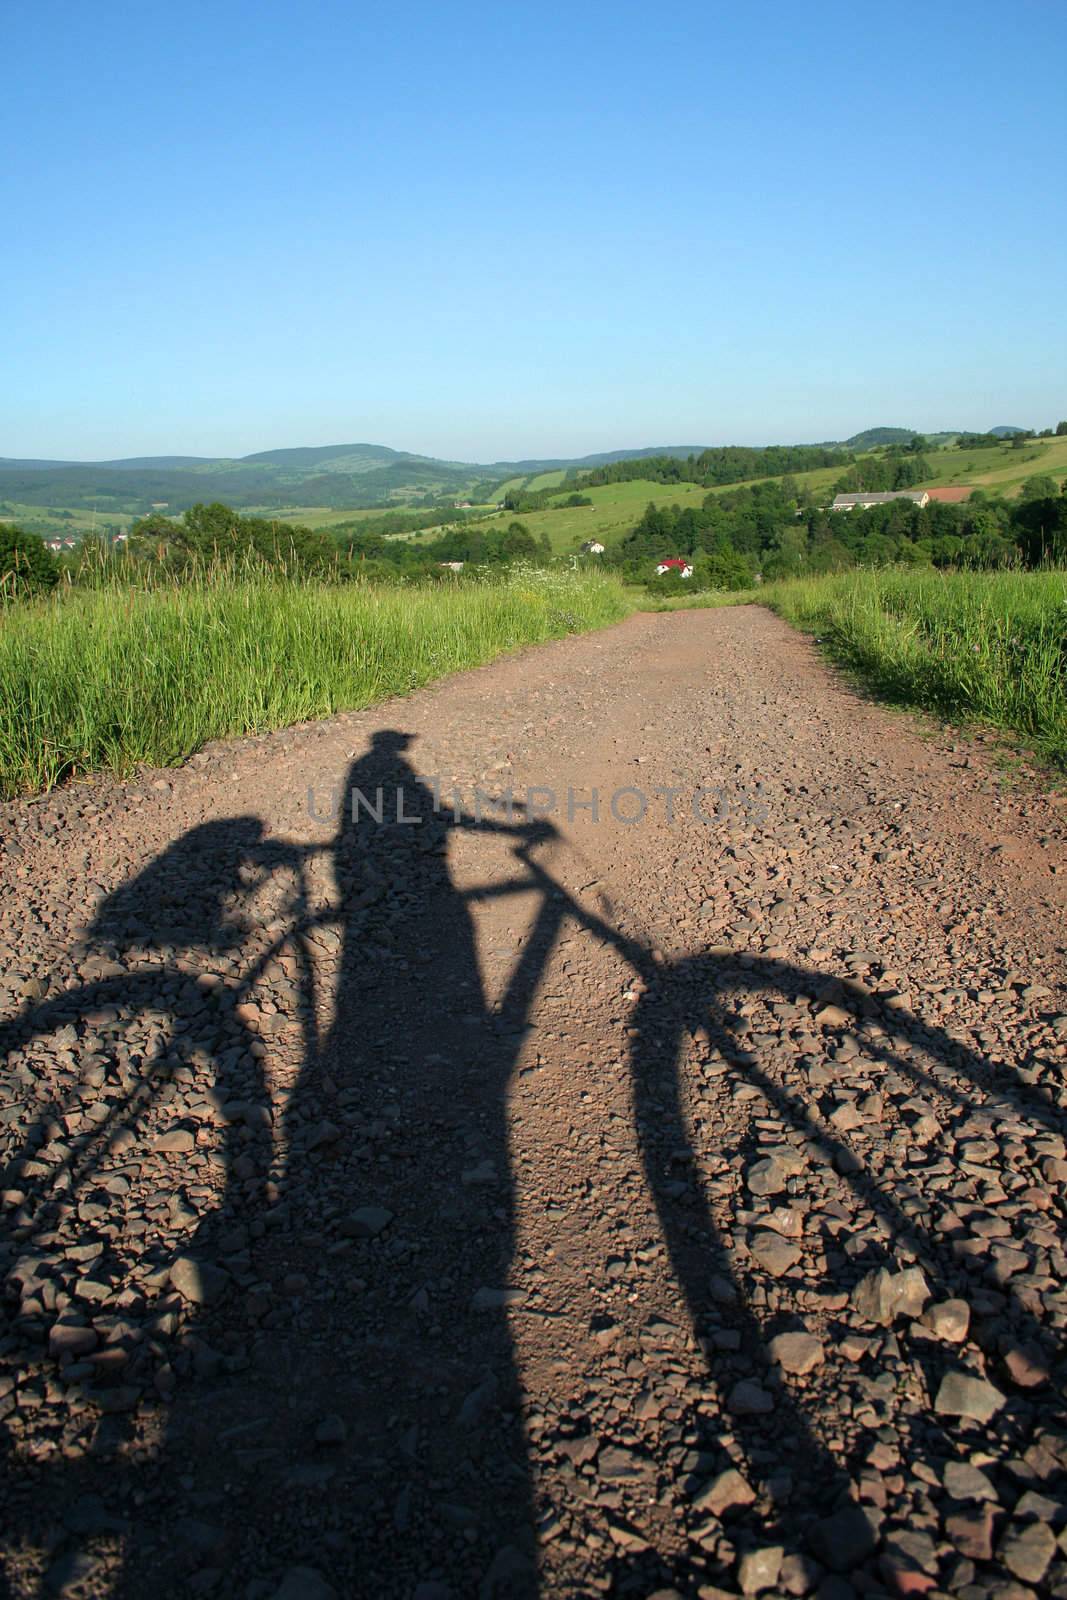 bicyclist's shadow 